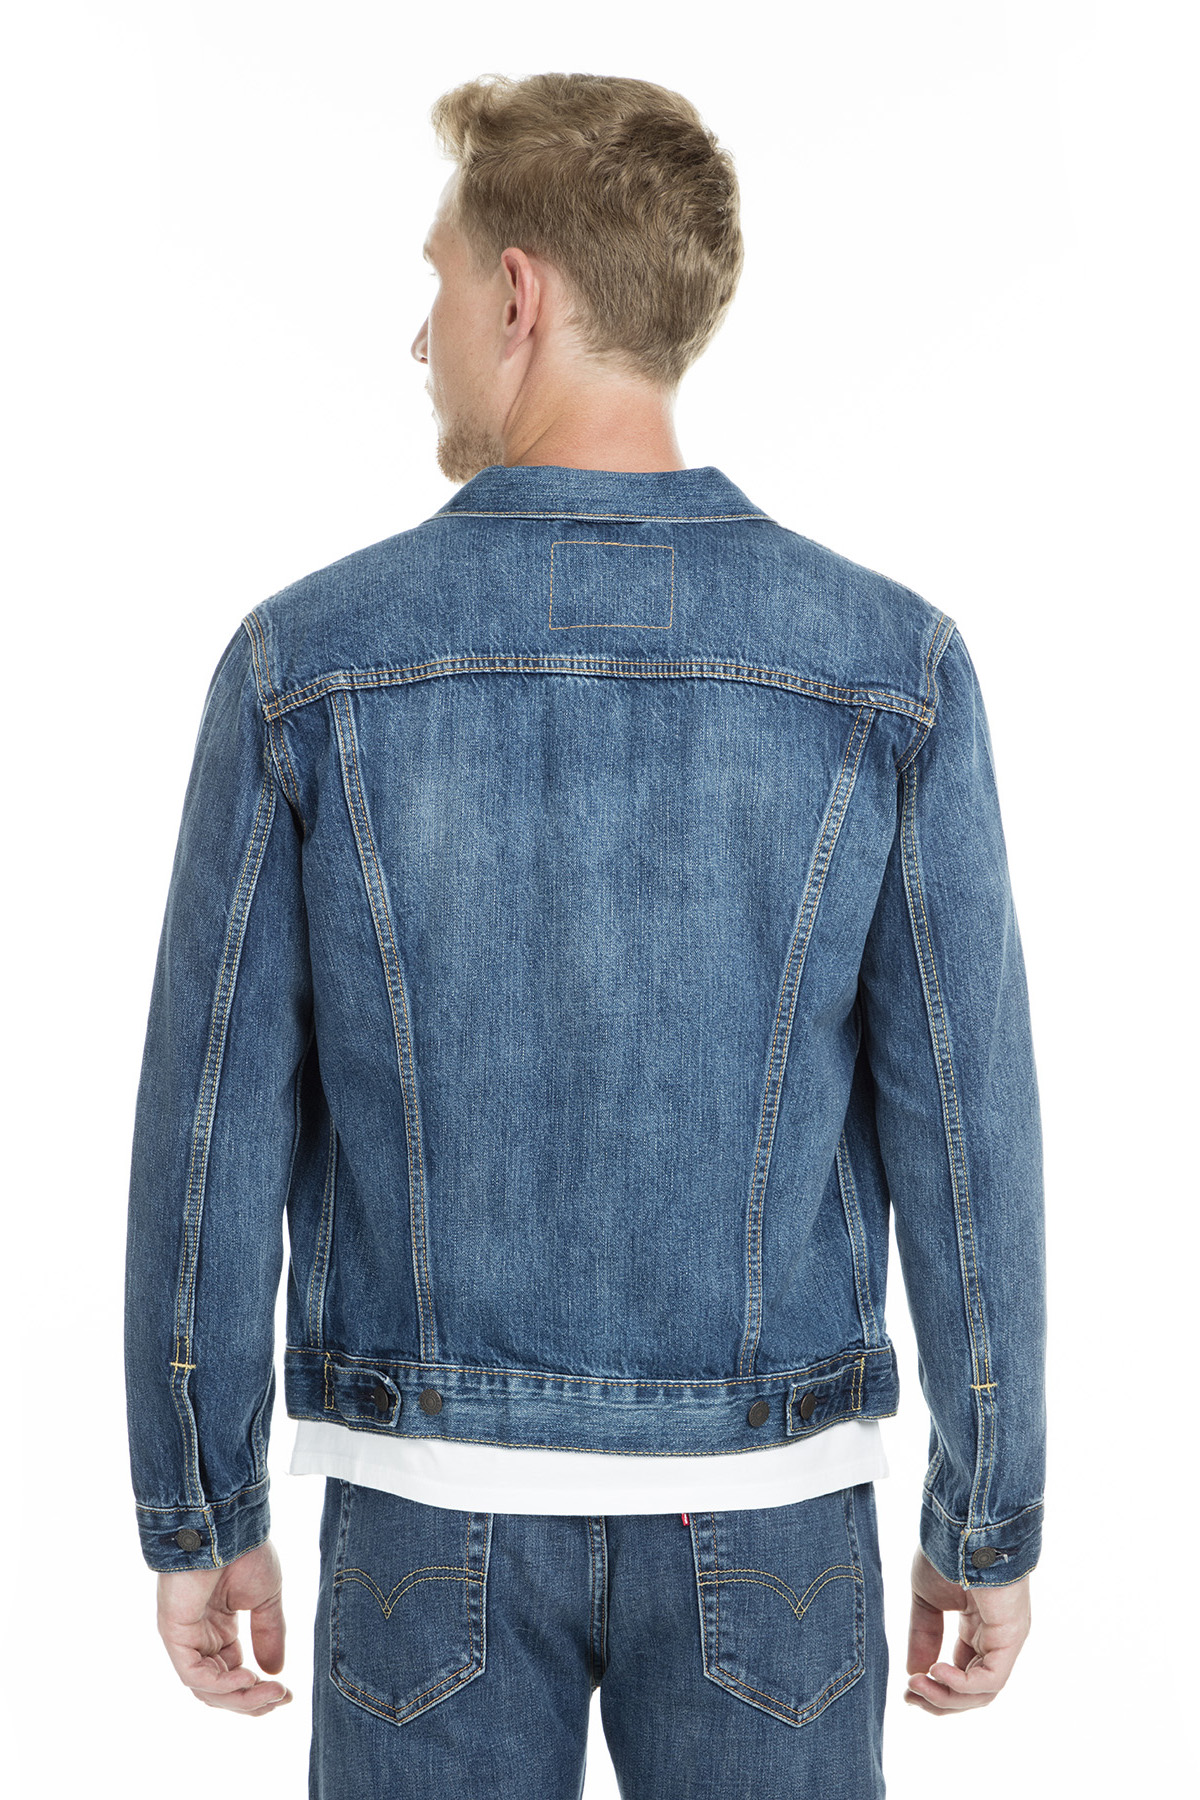 Levi's Jeans Jacket MEN DENIM JACKET 72334| | - AliExpress